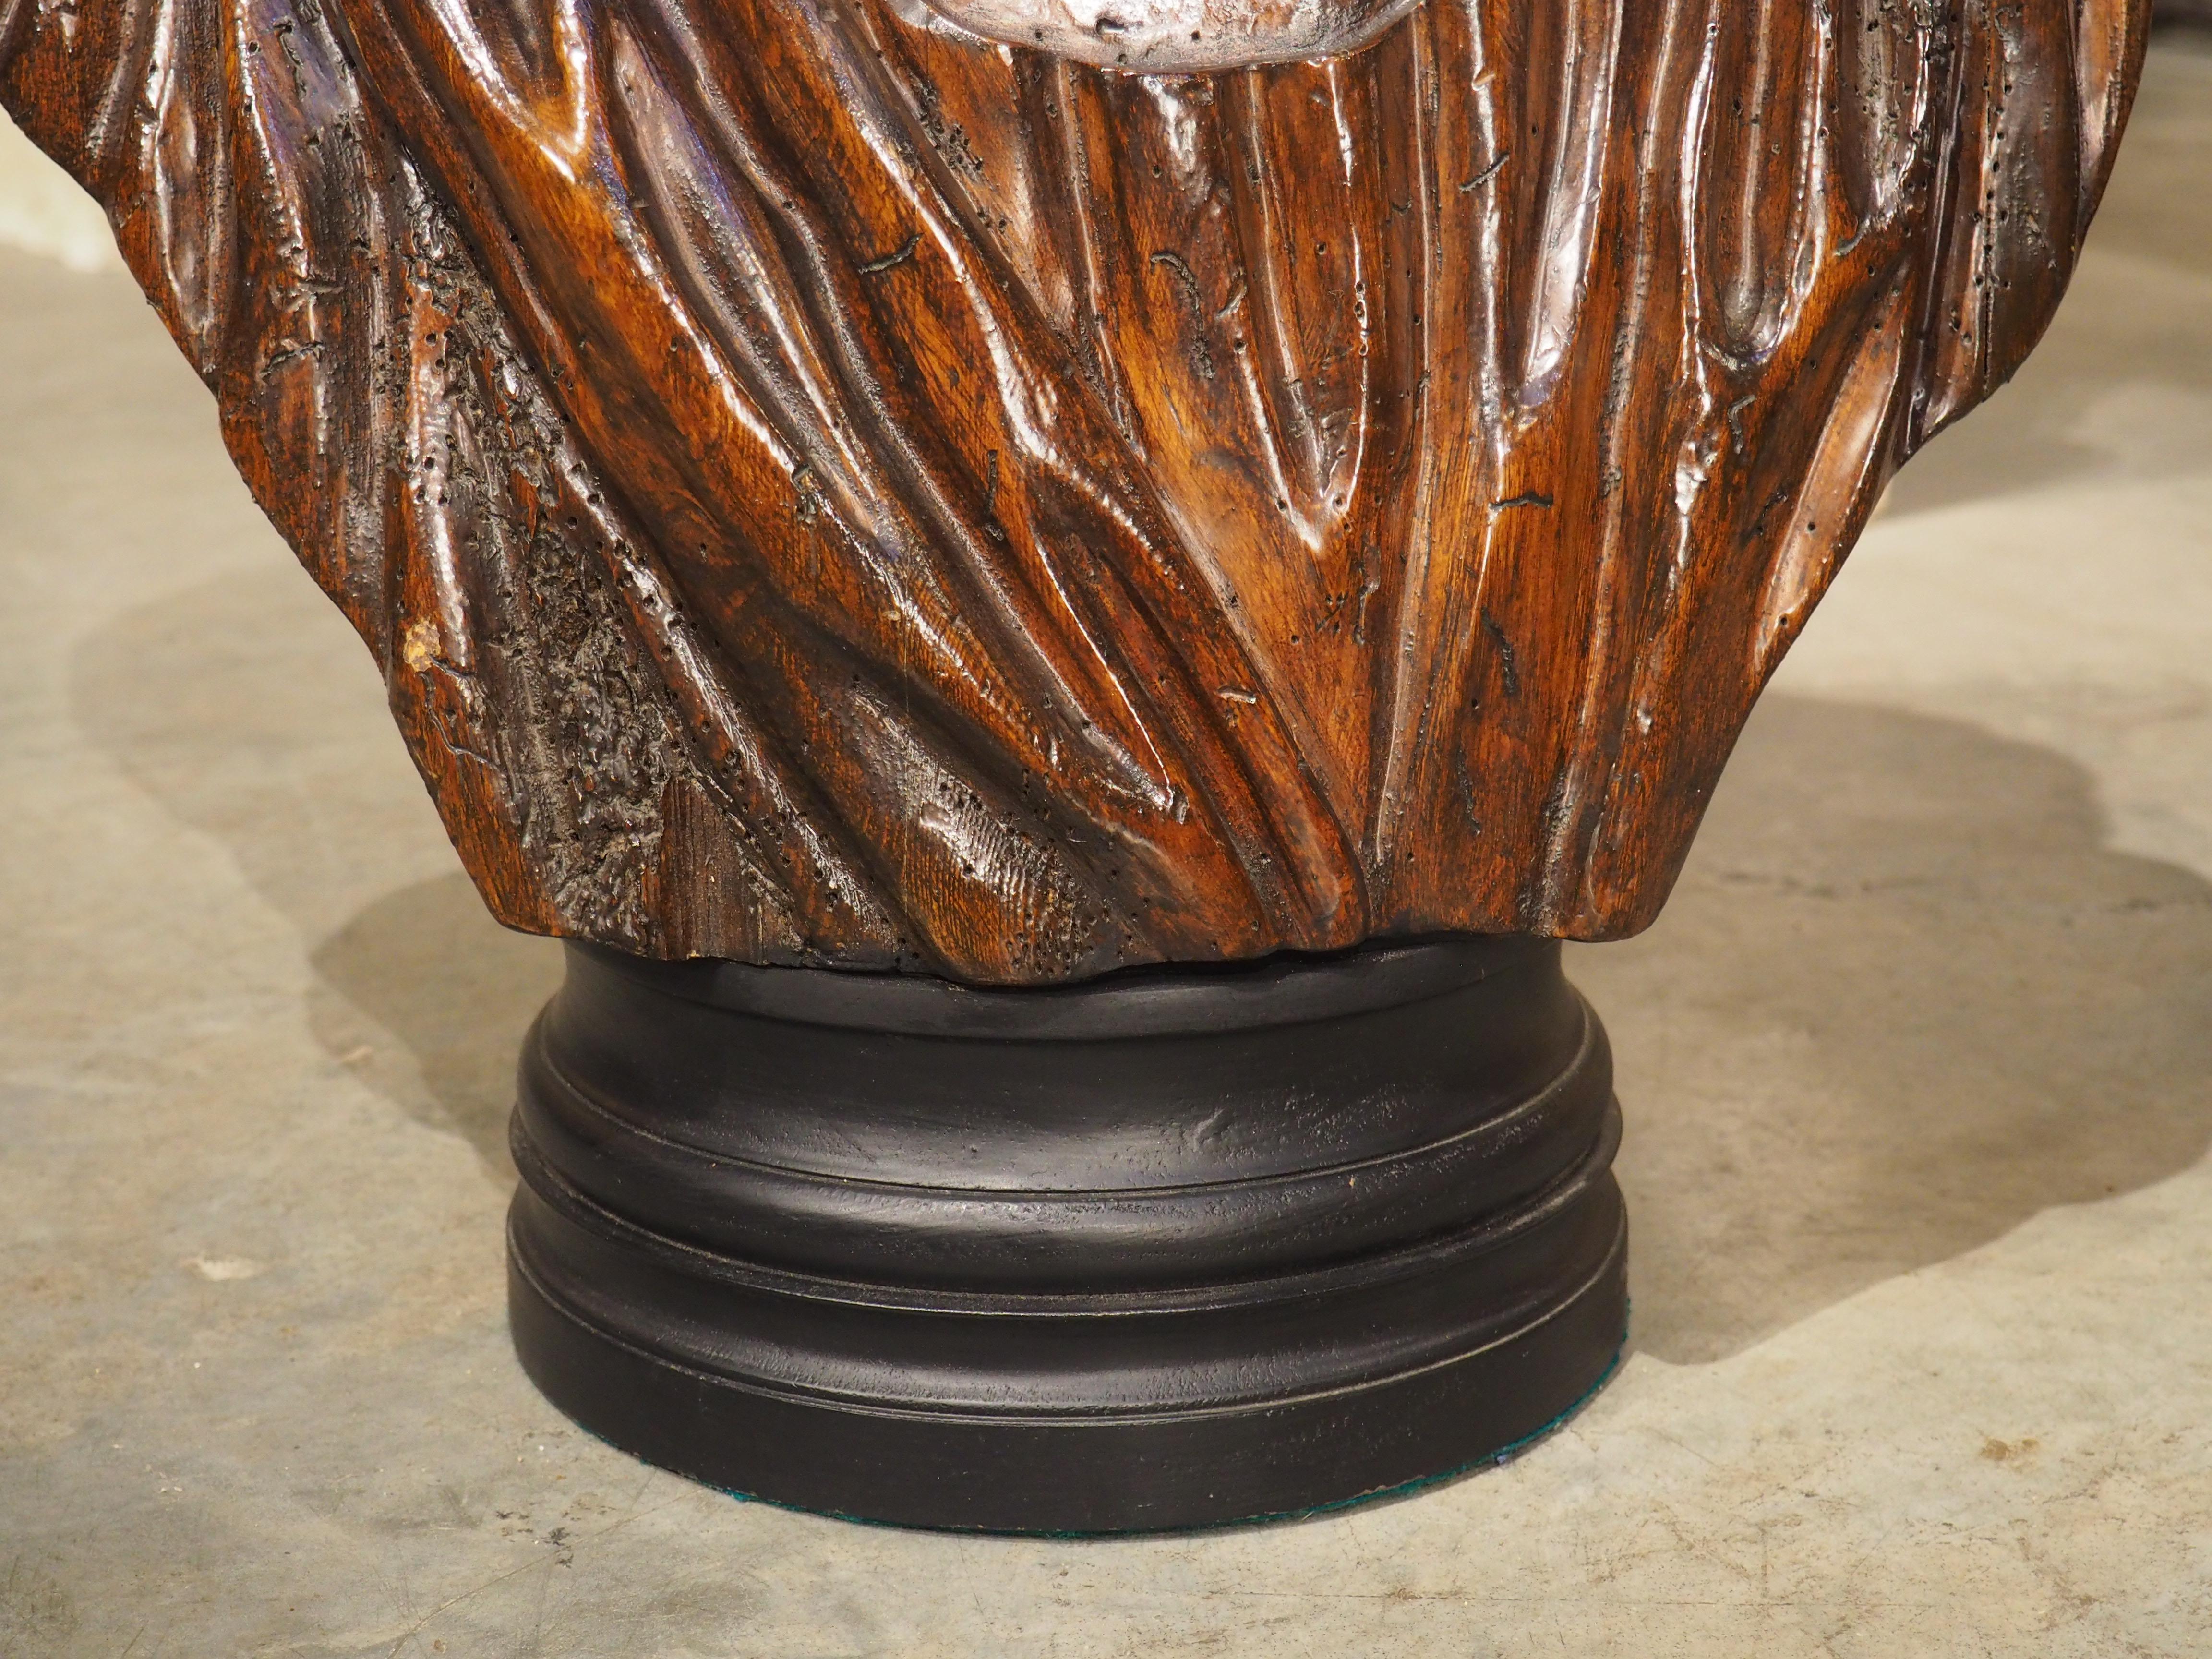 Après la célèbre statue en marbre d'Apollo Belvedere (datant de Rome, milieu du IIe siècle), ce buste en bois du dieu romain/grec a été sculpté à la main en Italie au cours des années 1800. Le marbre est lui-même considéré comme une copie d'un